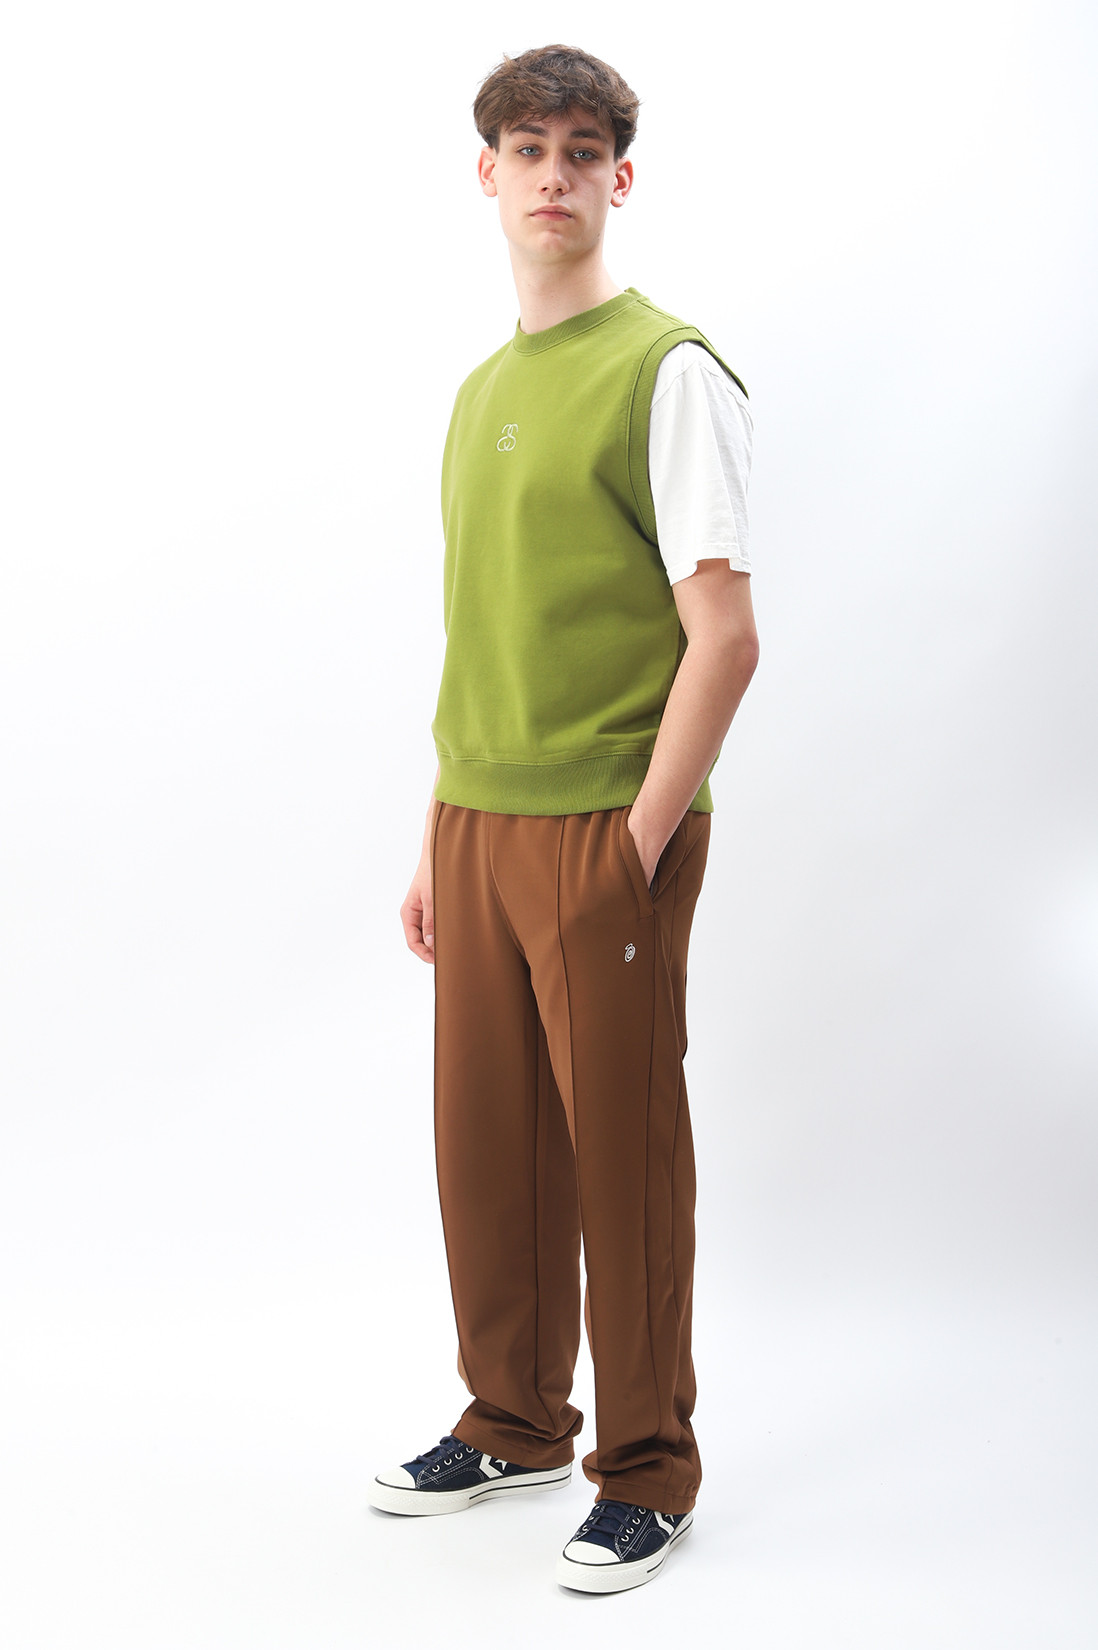 Ss-link fleece vest Green